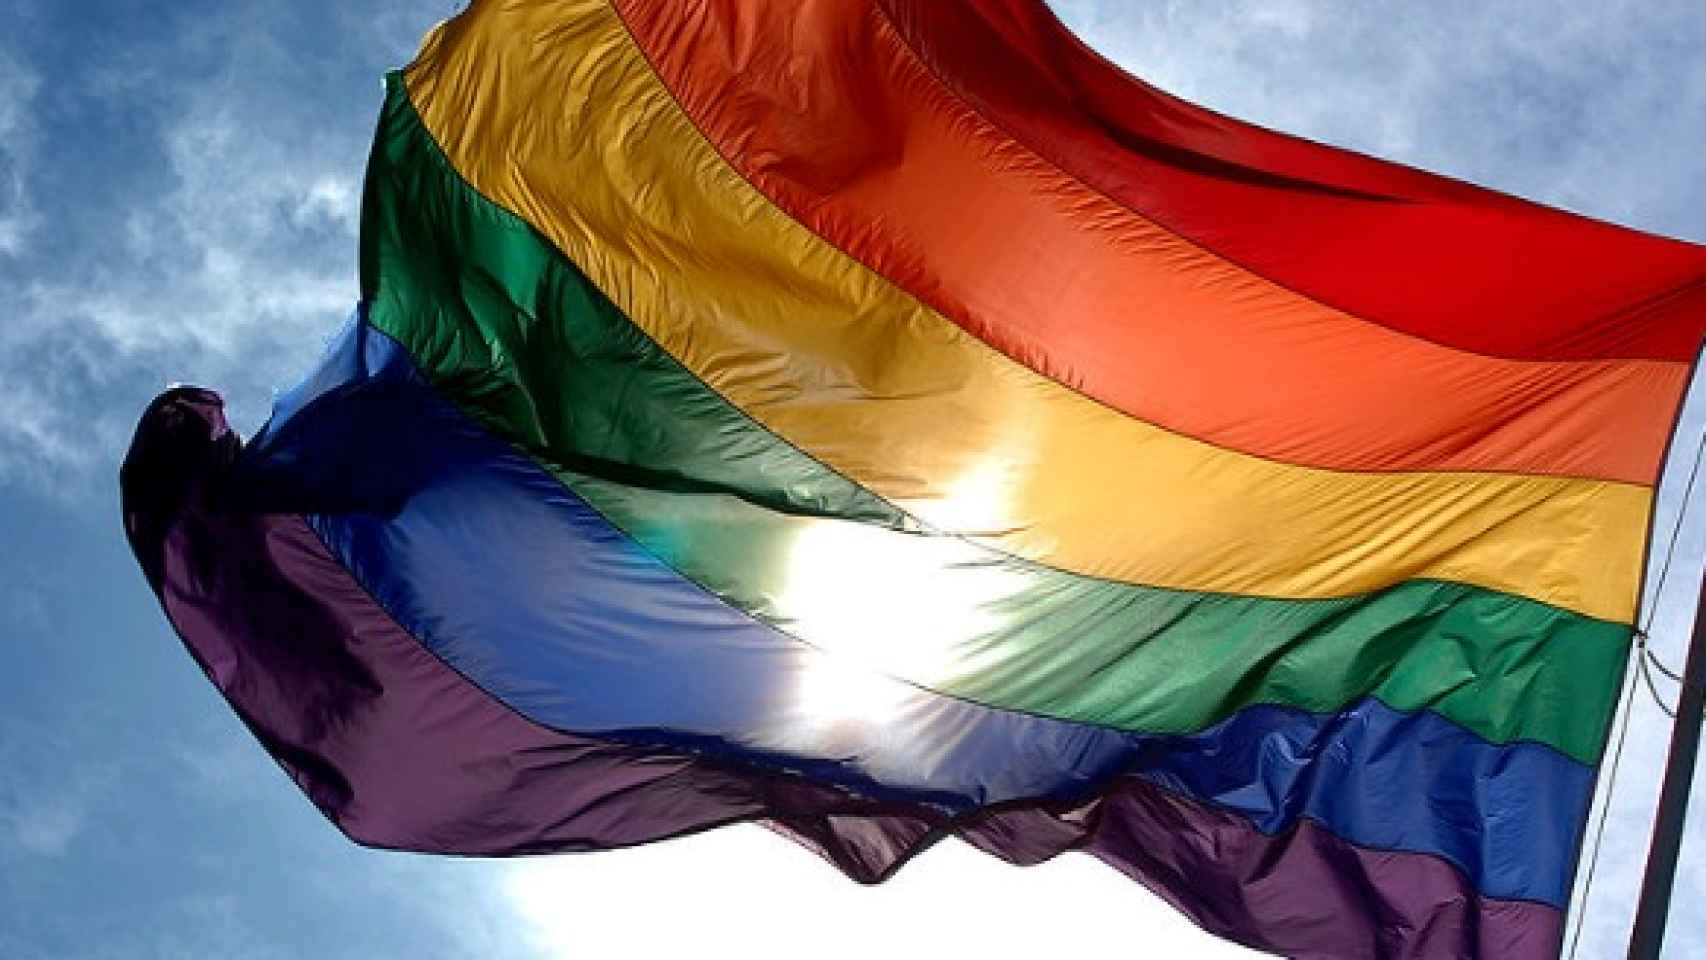 La bandera con los colores del arcoíris es el símbolo del Orgullo Gay.